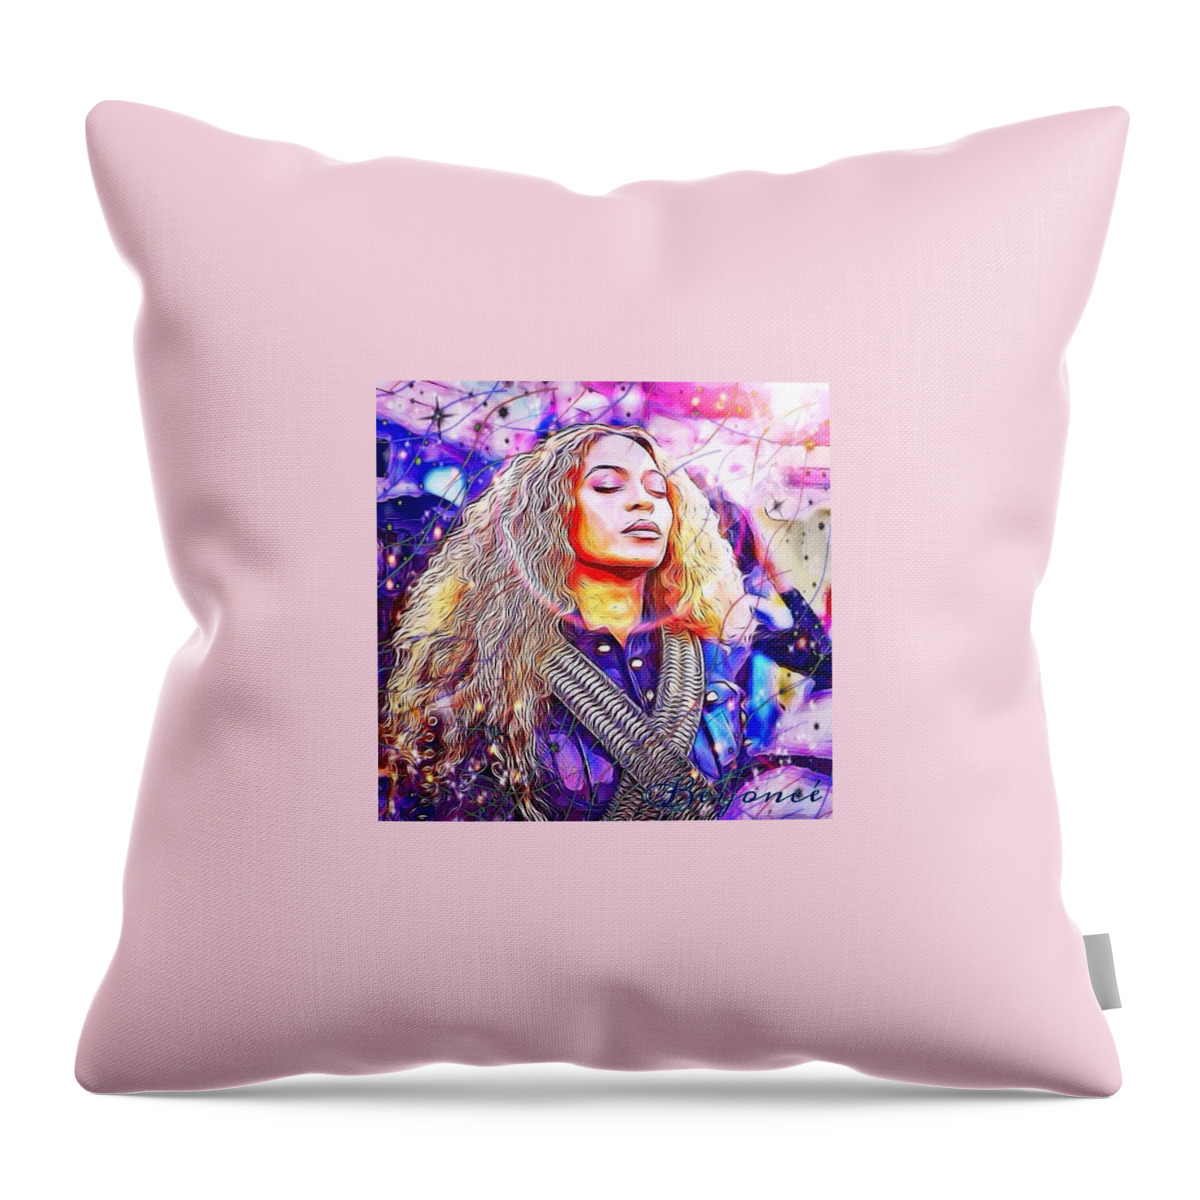 Digital Art Throw Pillow featuring the digital art Beyonce by Karen Buford